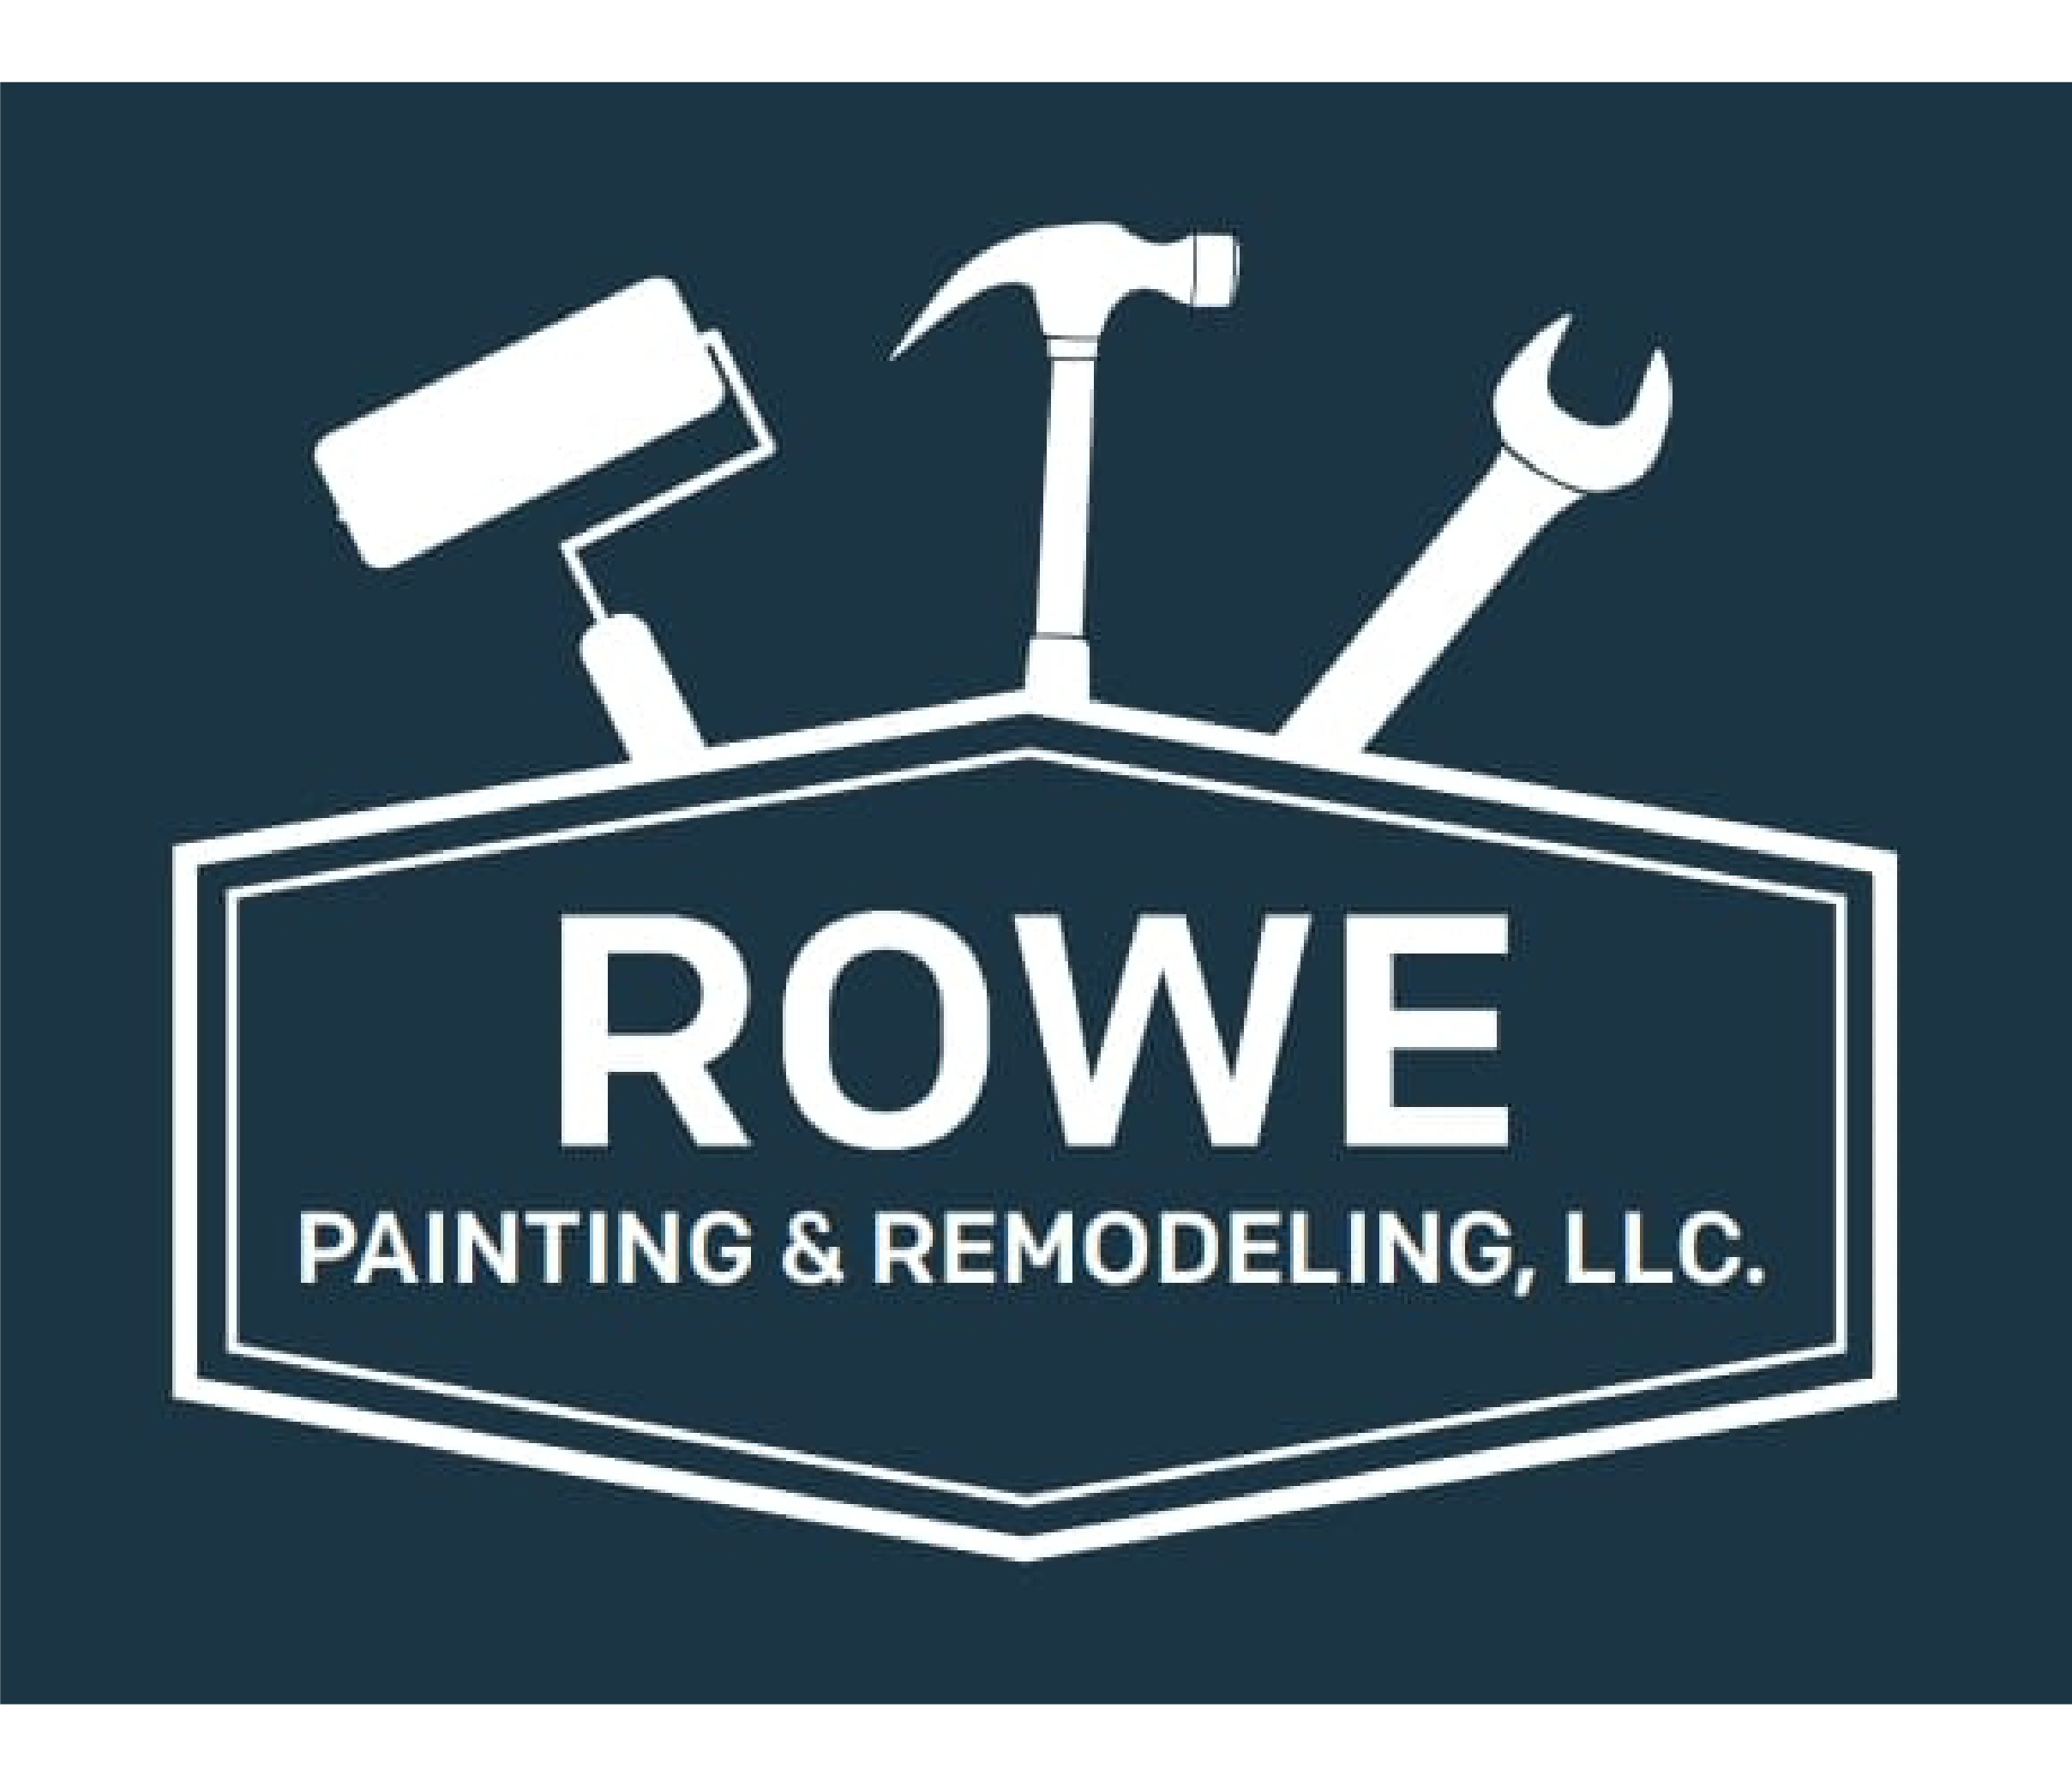 Rowe Painting & Remodeling